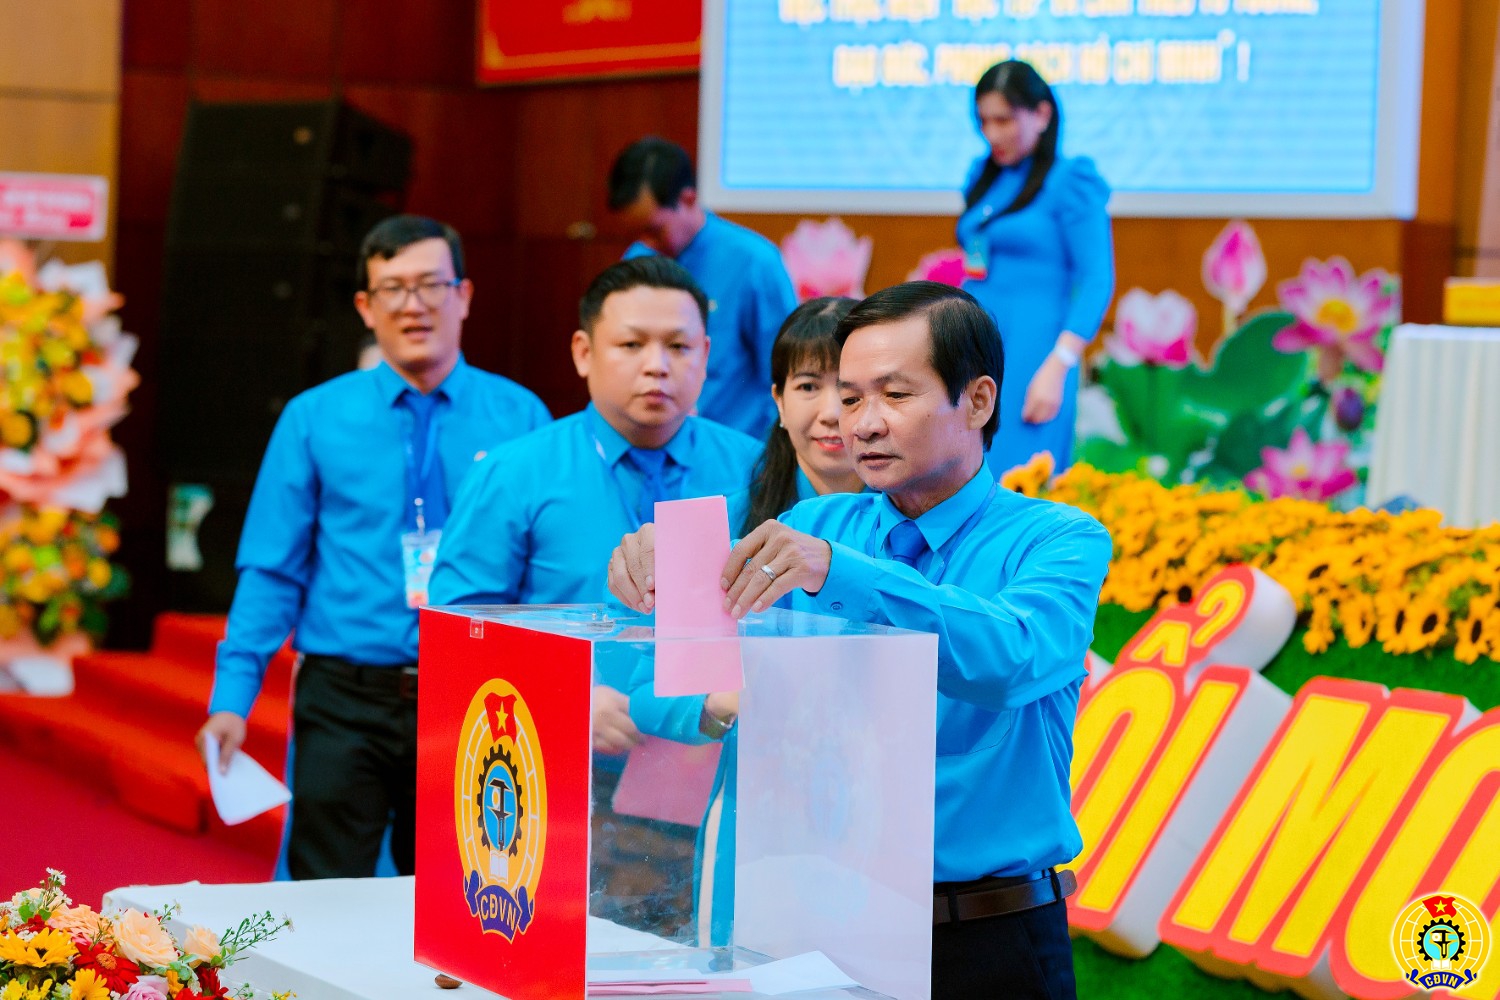 Ảnh Đại hội X Công đoàn tỉnh Tây Ninh